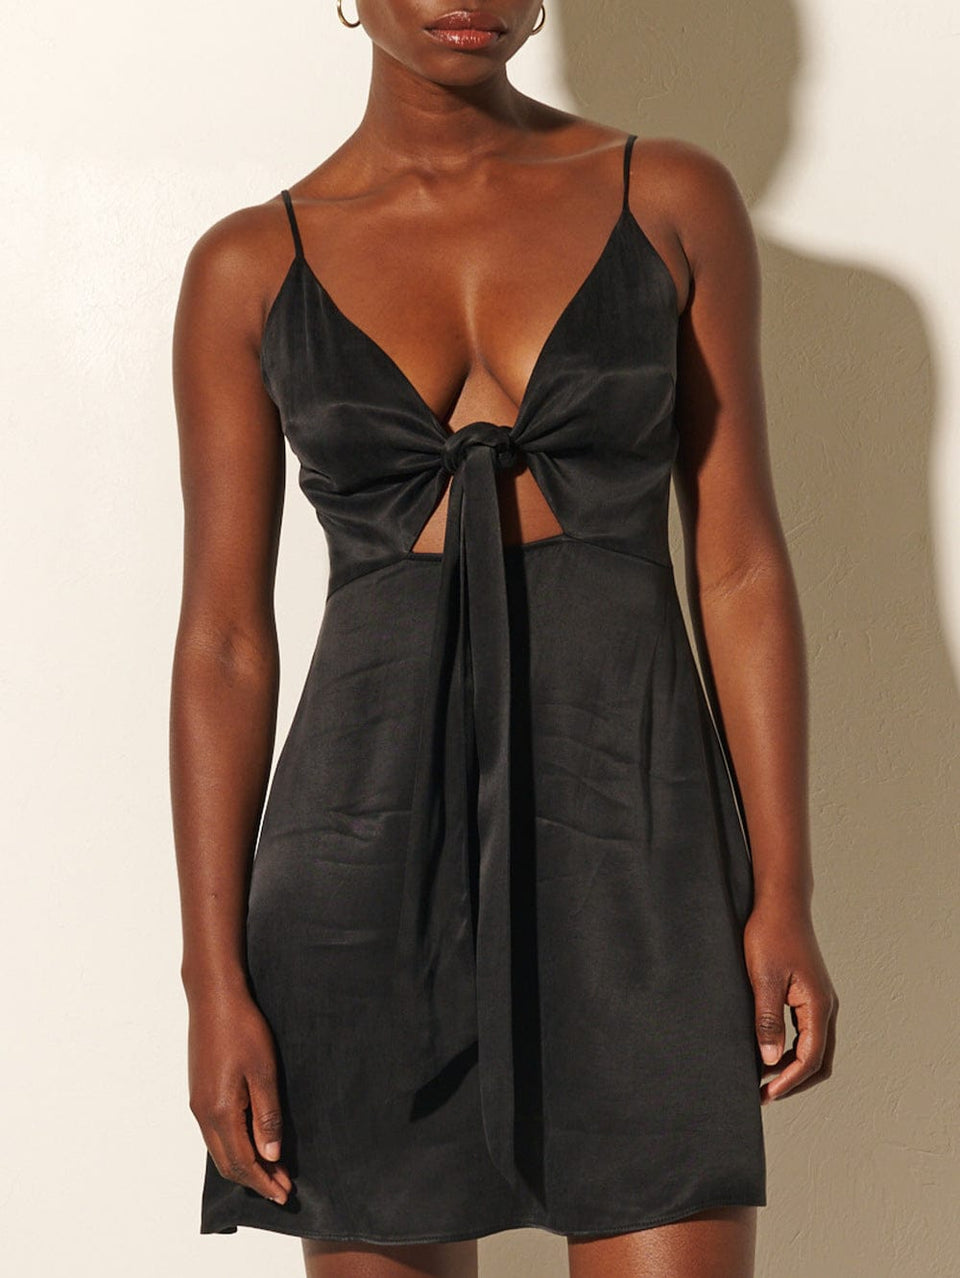 KIVARI Bianca Tie Front Mini Dress | Model wears Black Tie Front Mini Dress Close Up